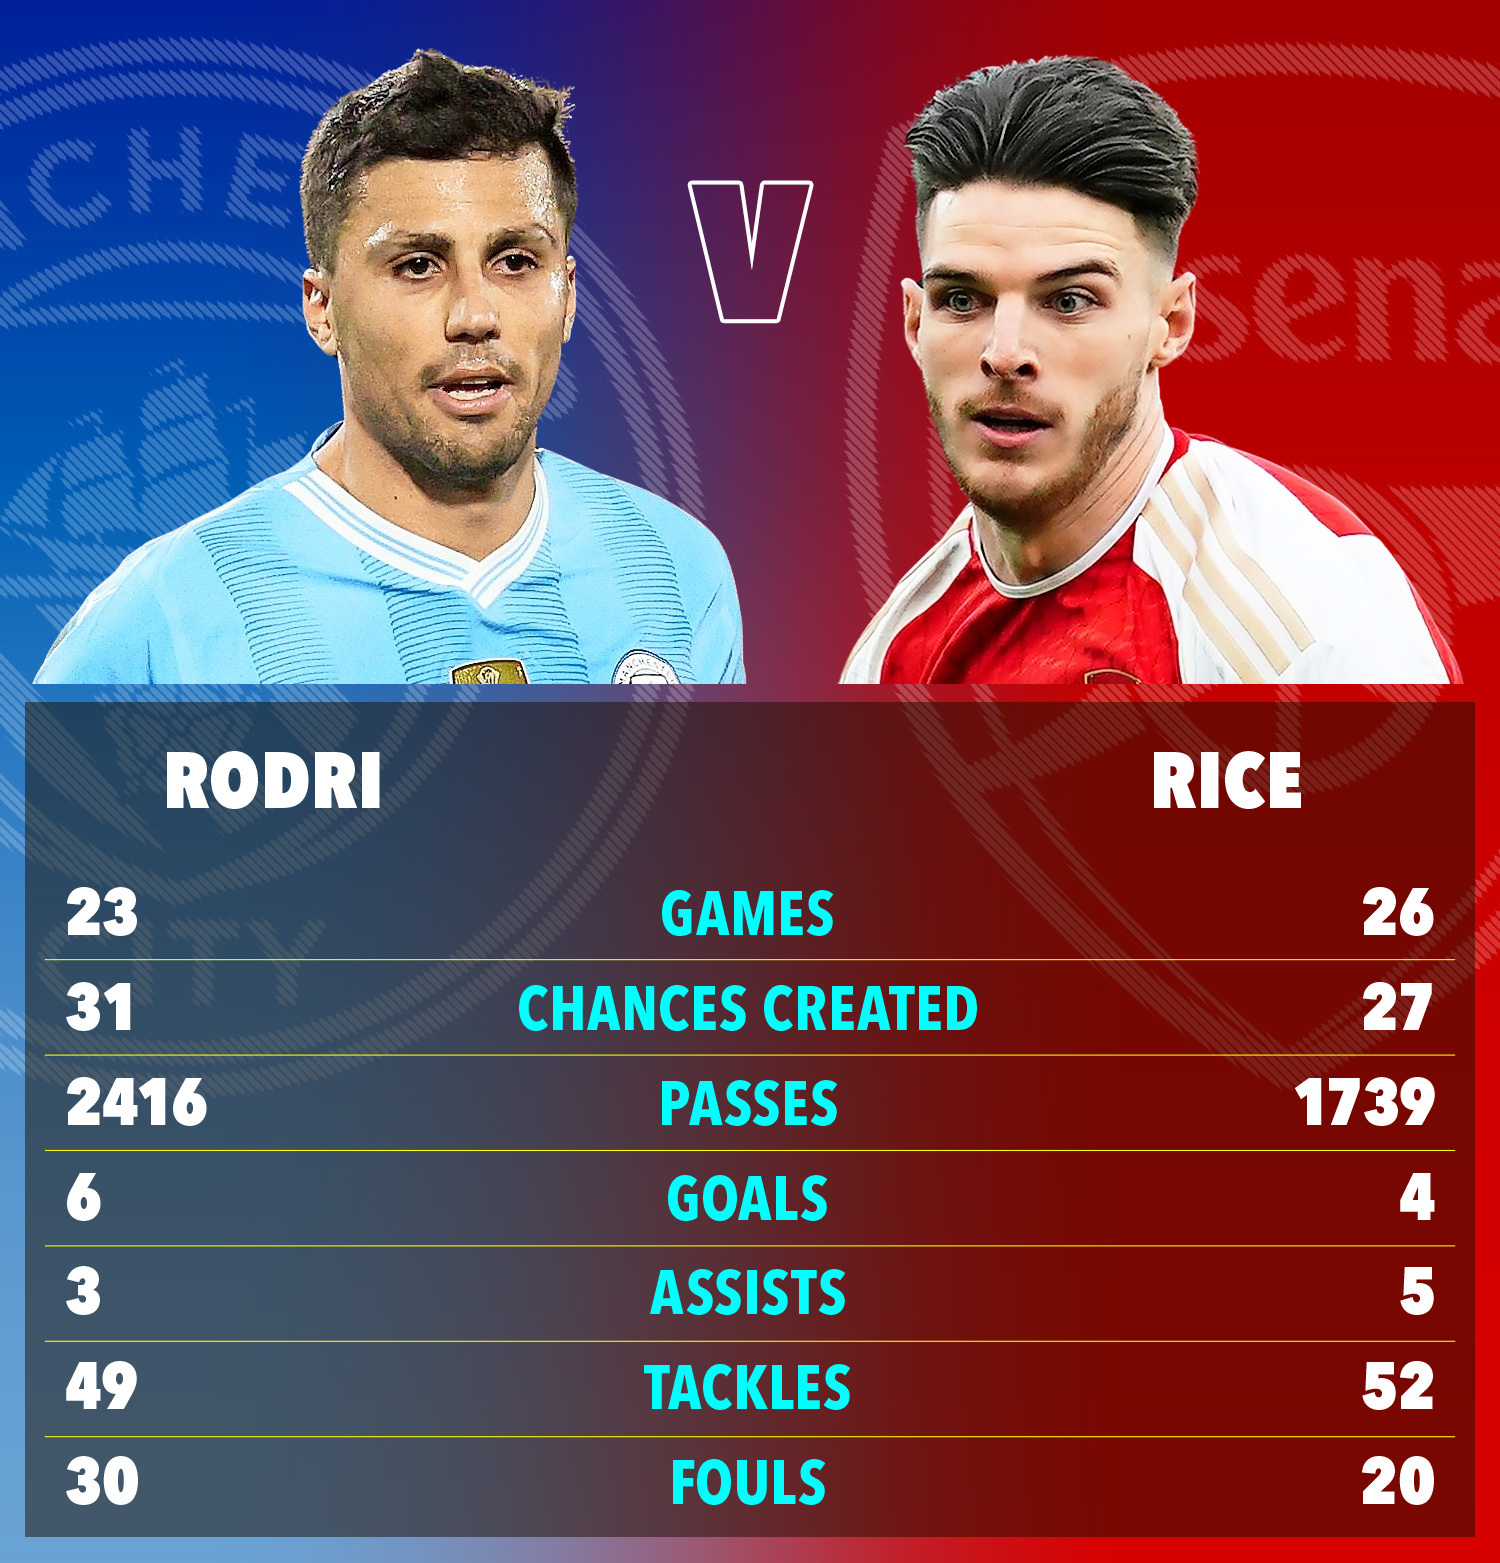 Die bisherigen Premier-League-Statistiken von Rodri und Rice in dieser Saison